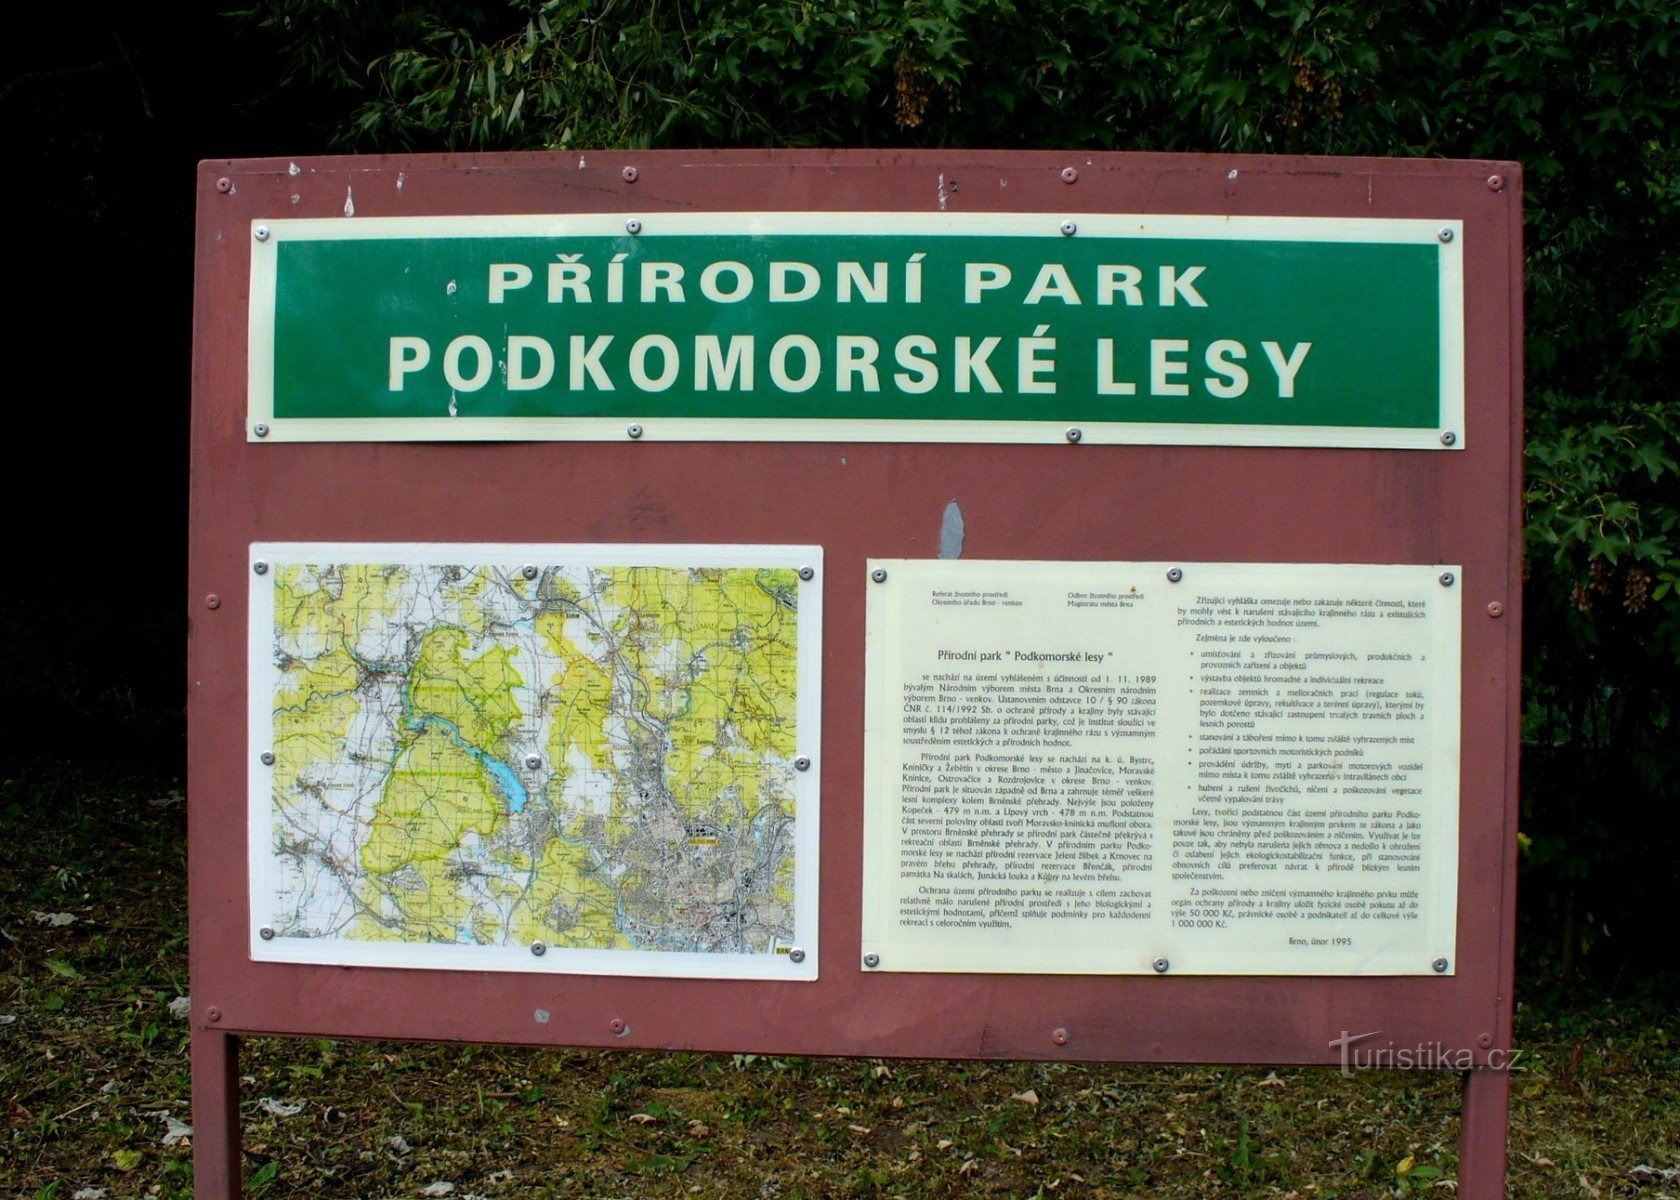 Podkomorské lesy 自然公园